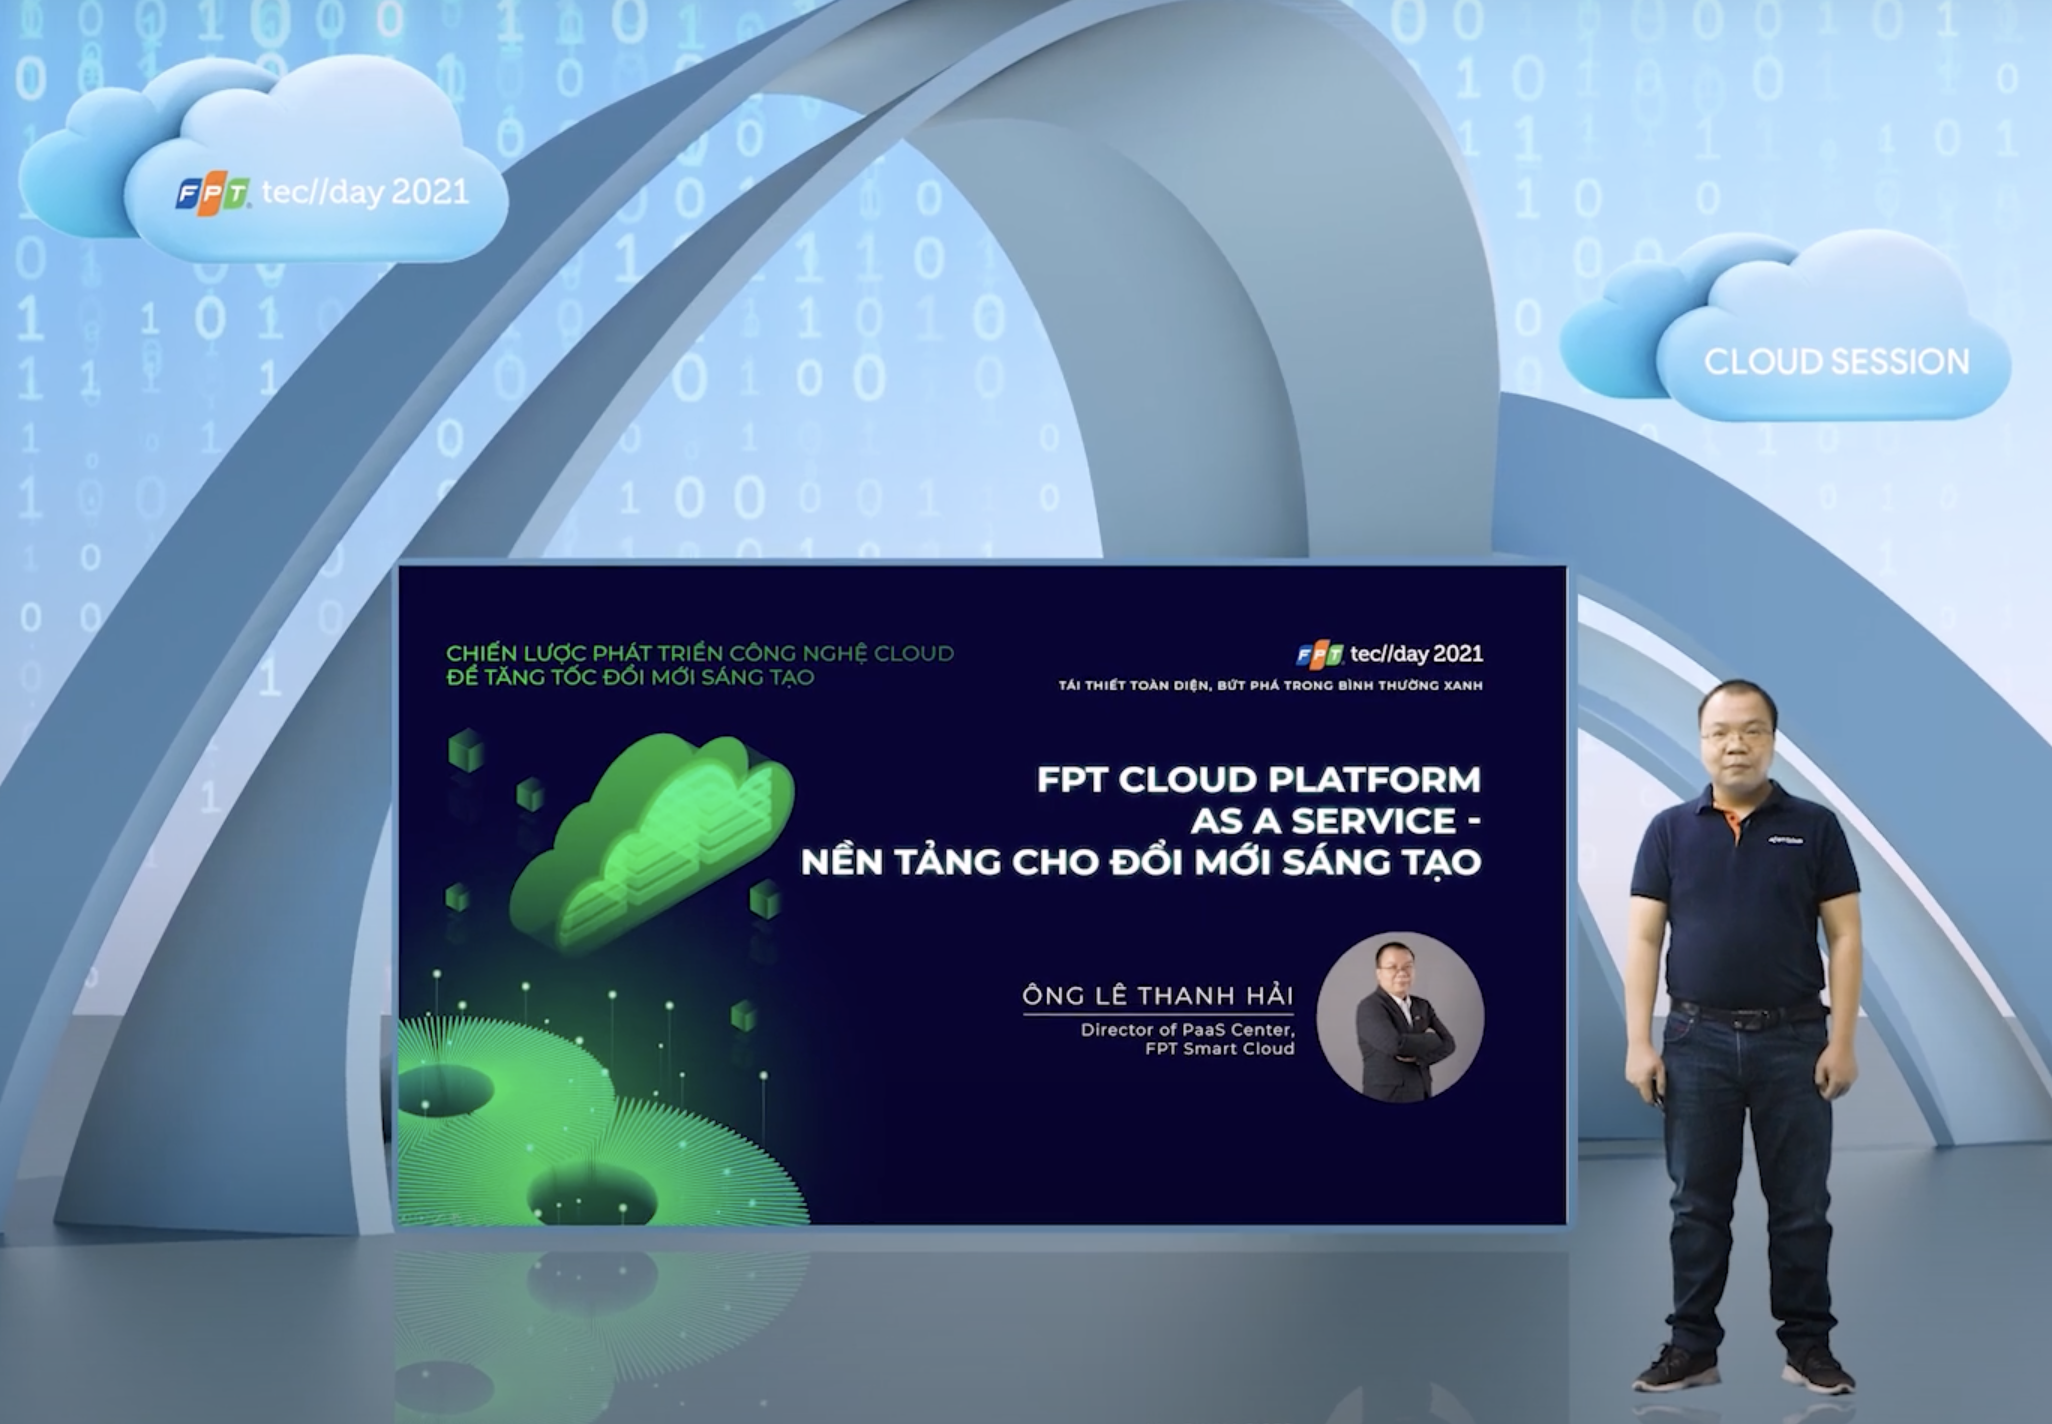 FPT Cloud Platform As A Service - Nền tảng cho đổi mới sáng tạo